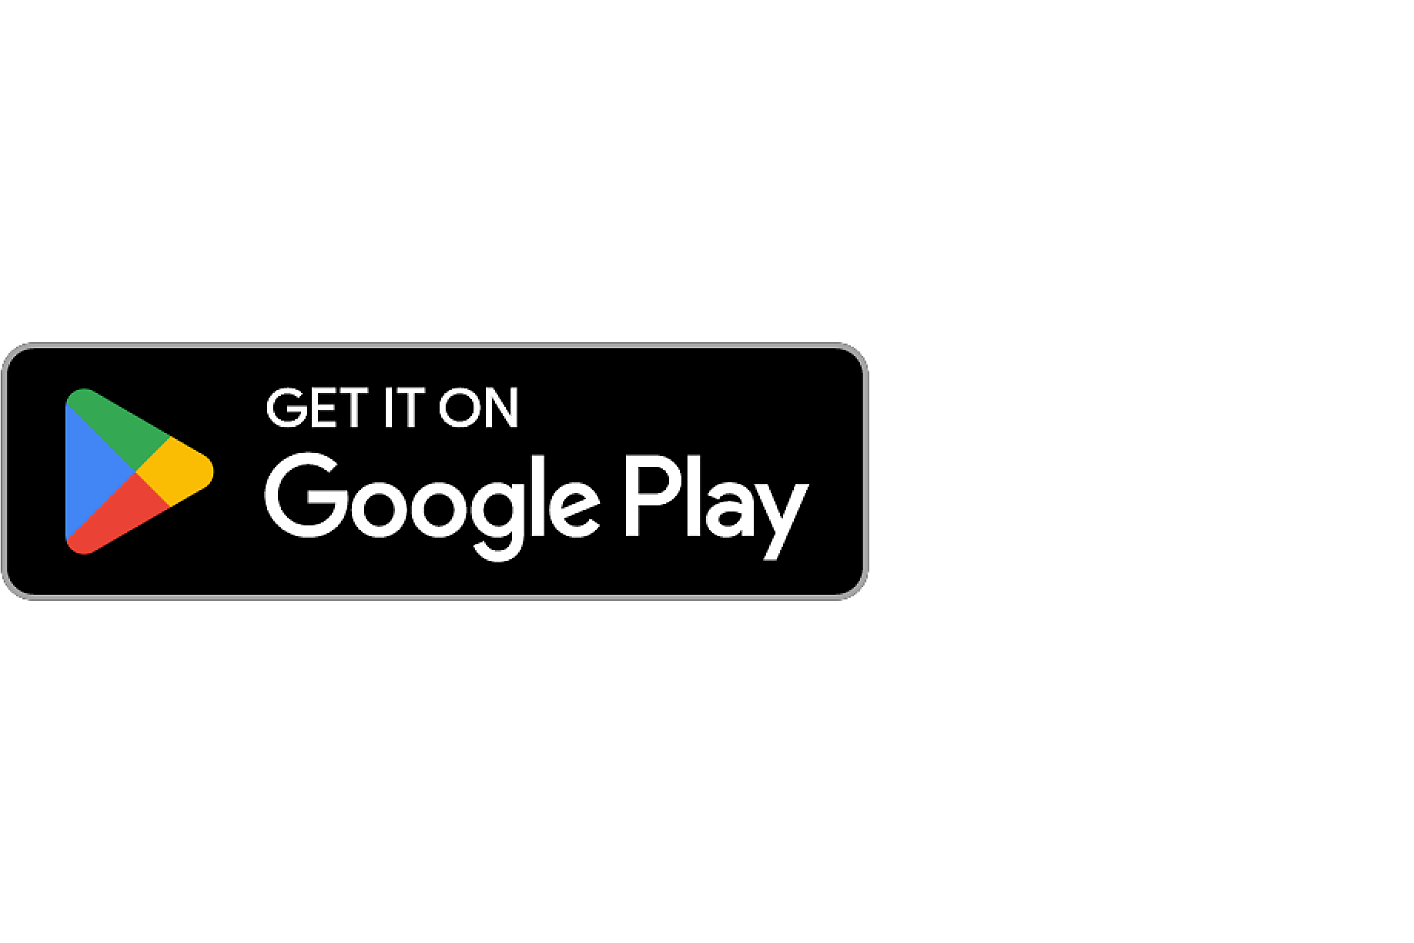 Gambar logo Google Play store dengan teks "GET IT ON" di bagian atas